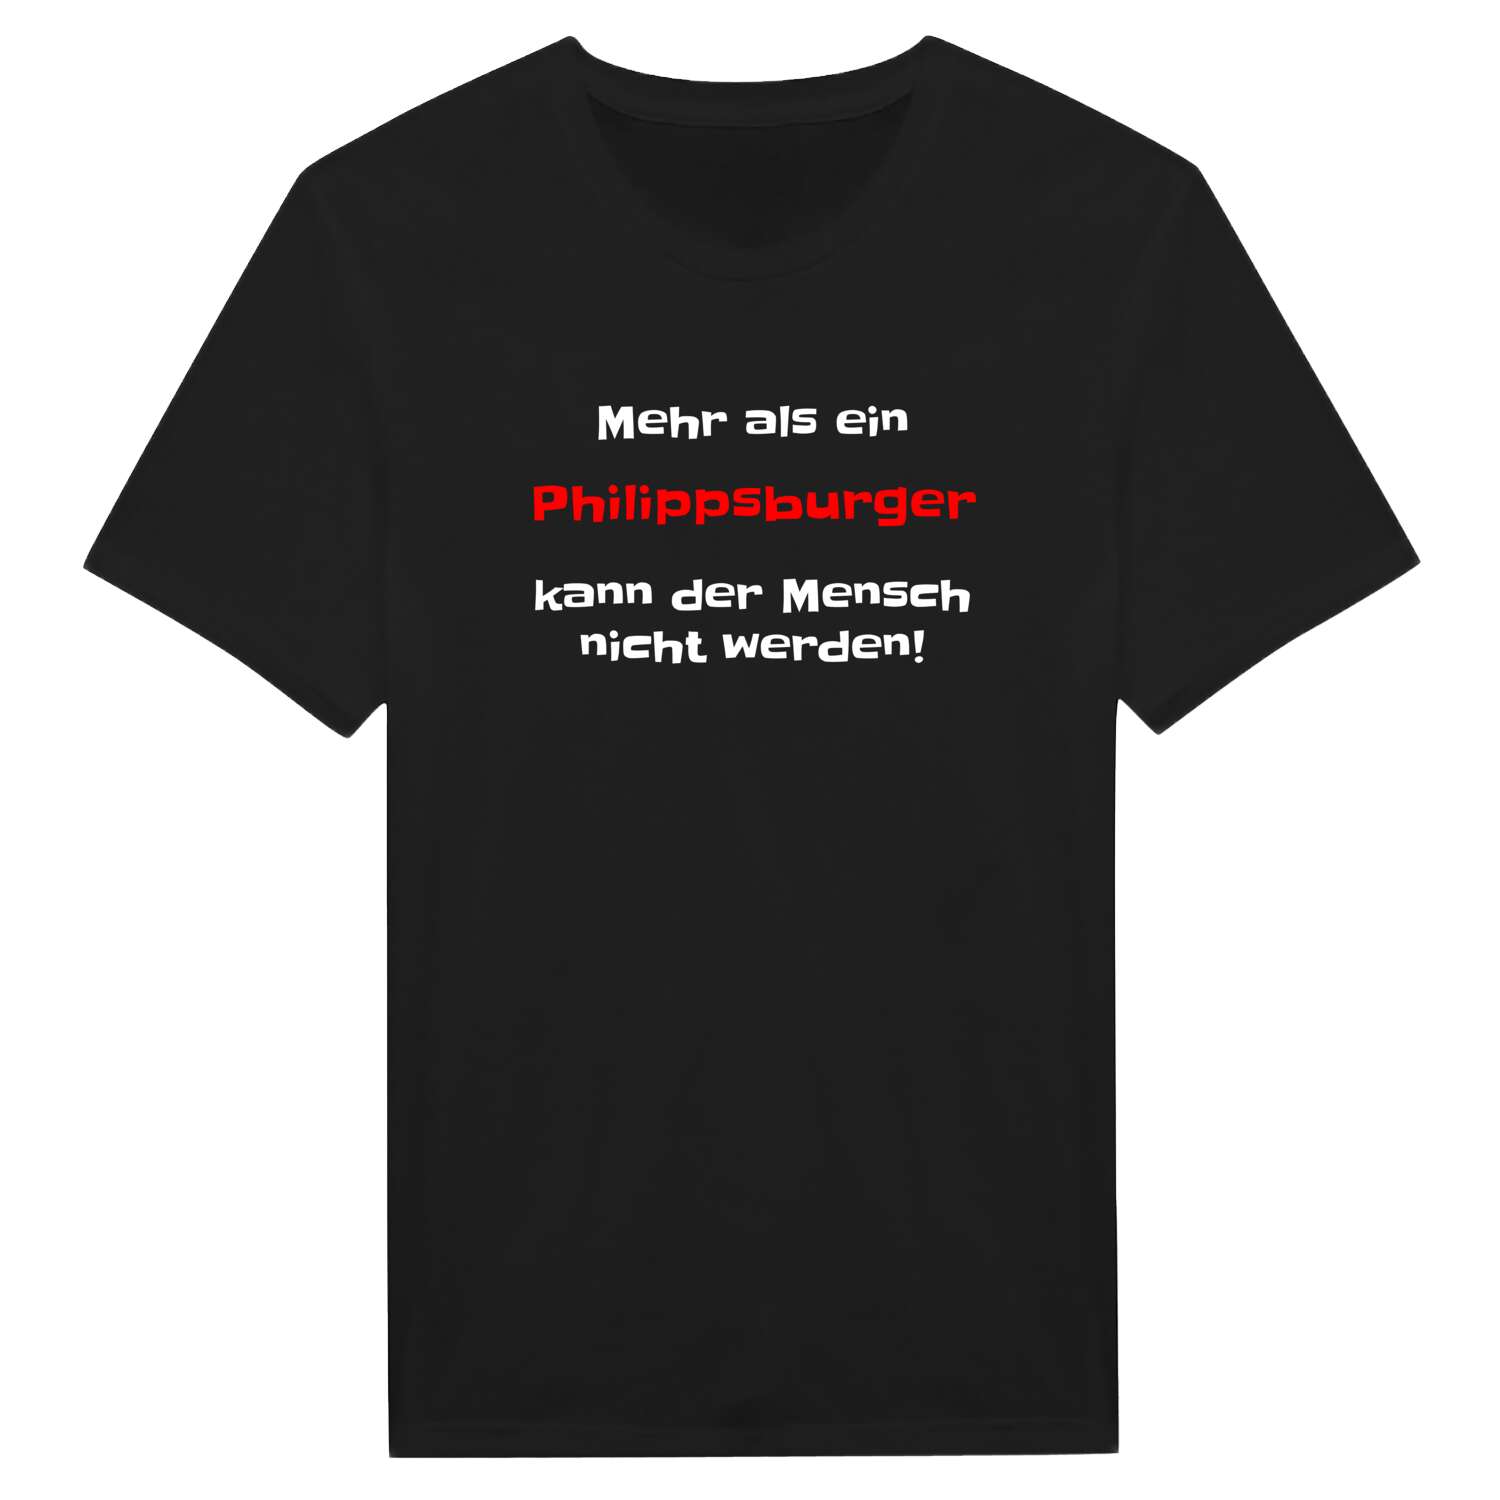 Philippsburg T-Shirt »Mehr als ein«